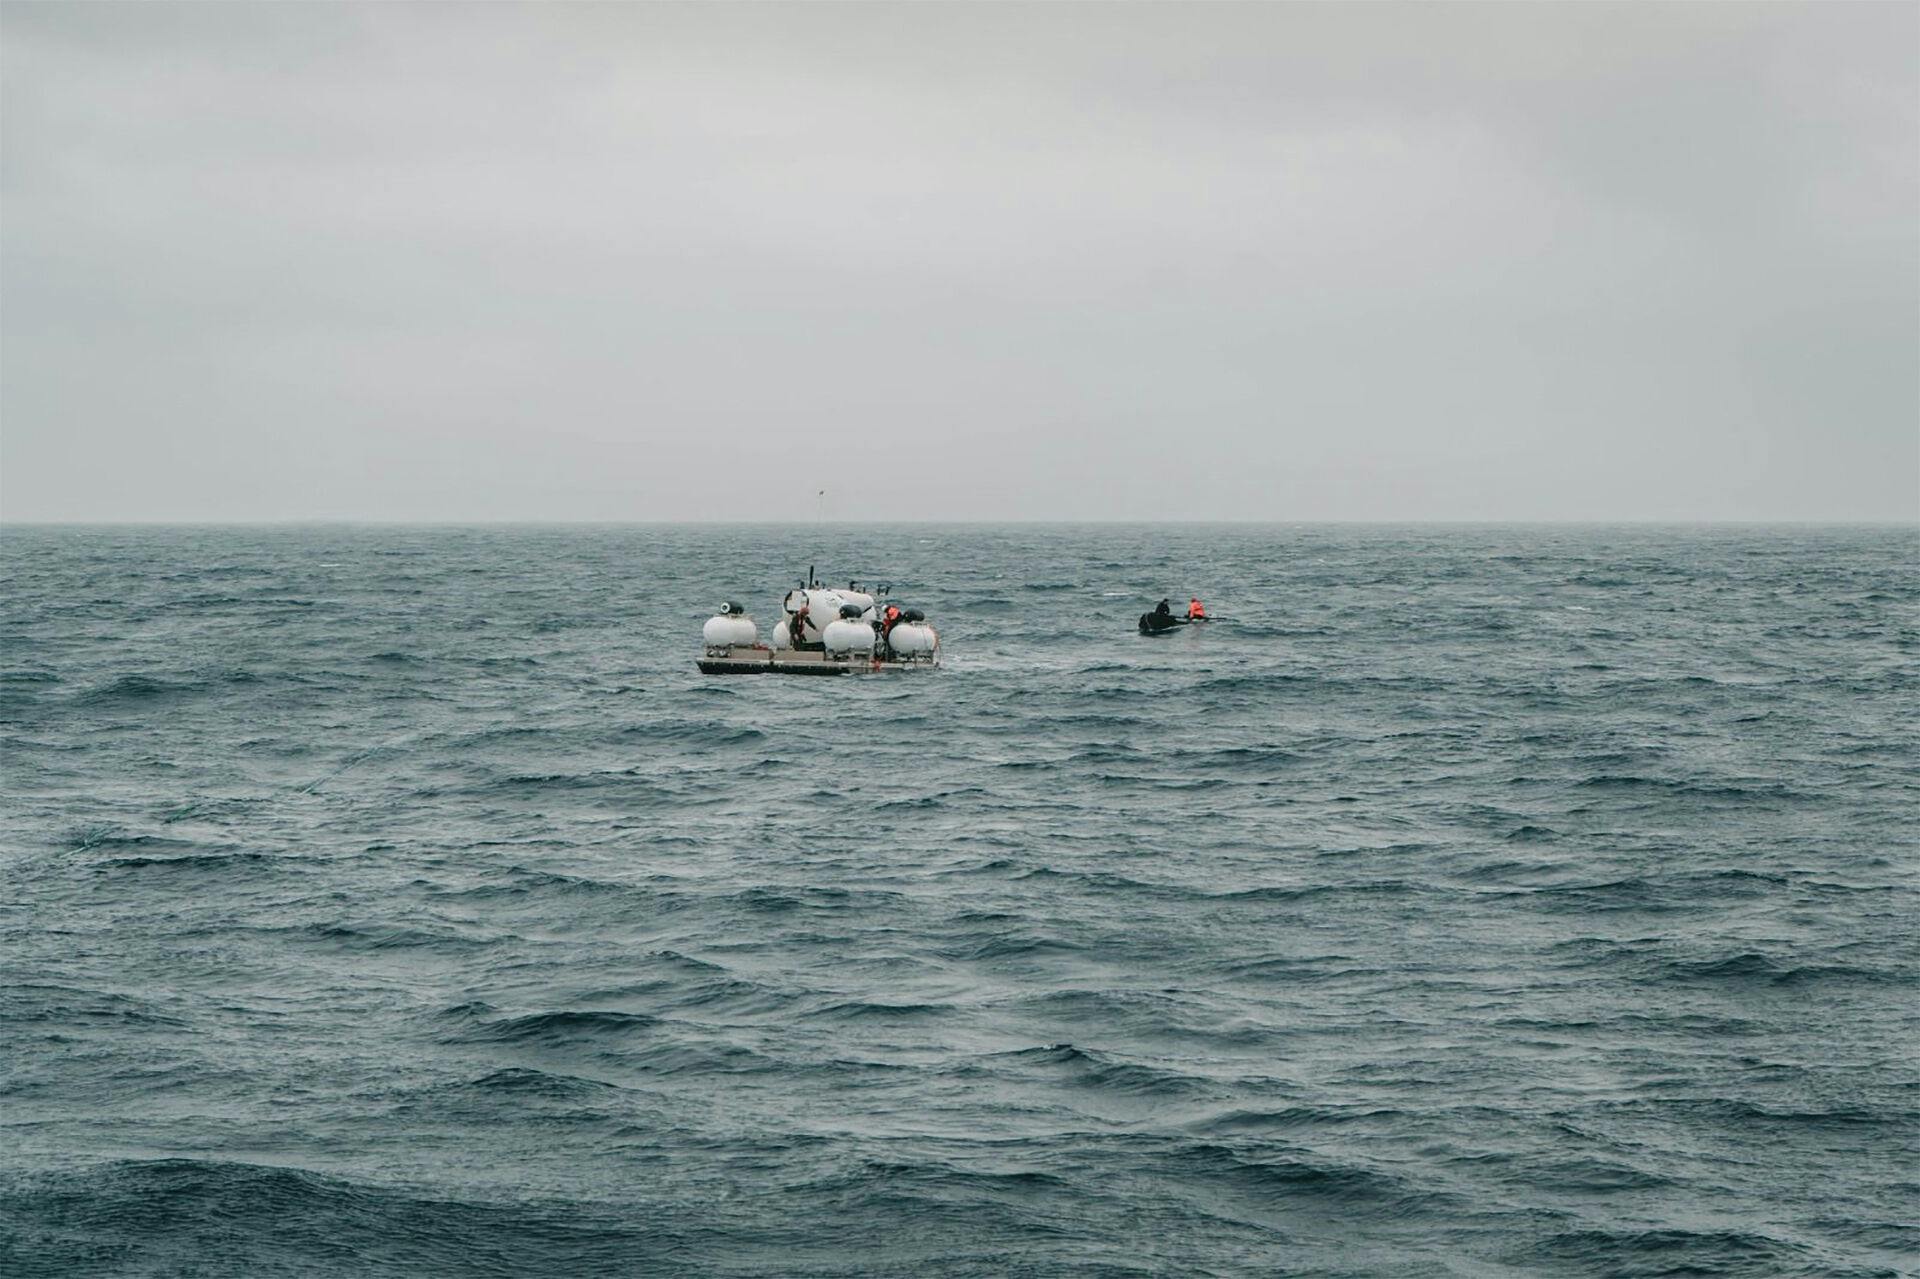 Dette billede er taget klokken 4 om morgenen den 18. juni 2023 og viser mandskabet gøre klar til at søsætte ubåden, der nu er forsvundet.

&nbsp;

&nbsp;
